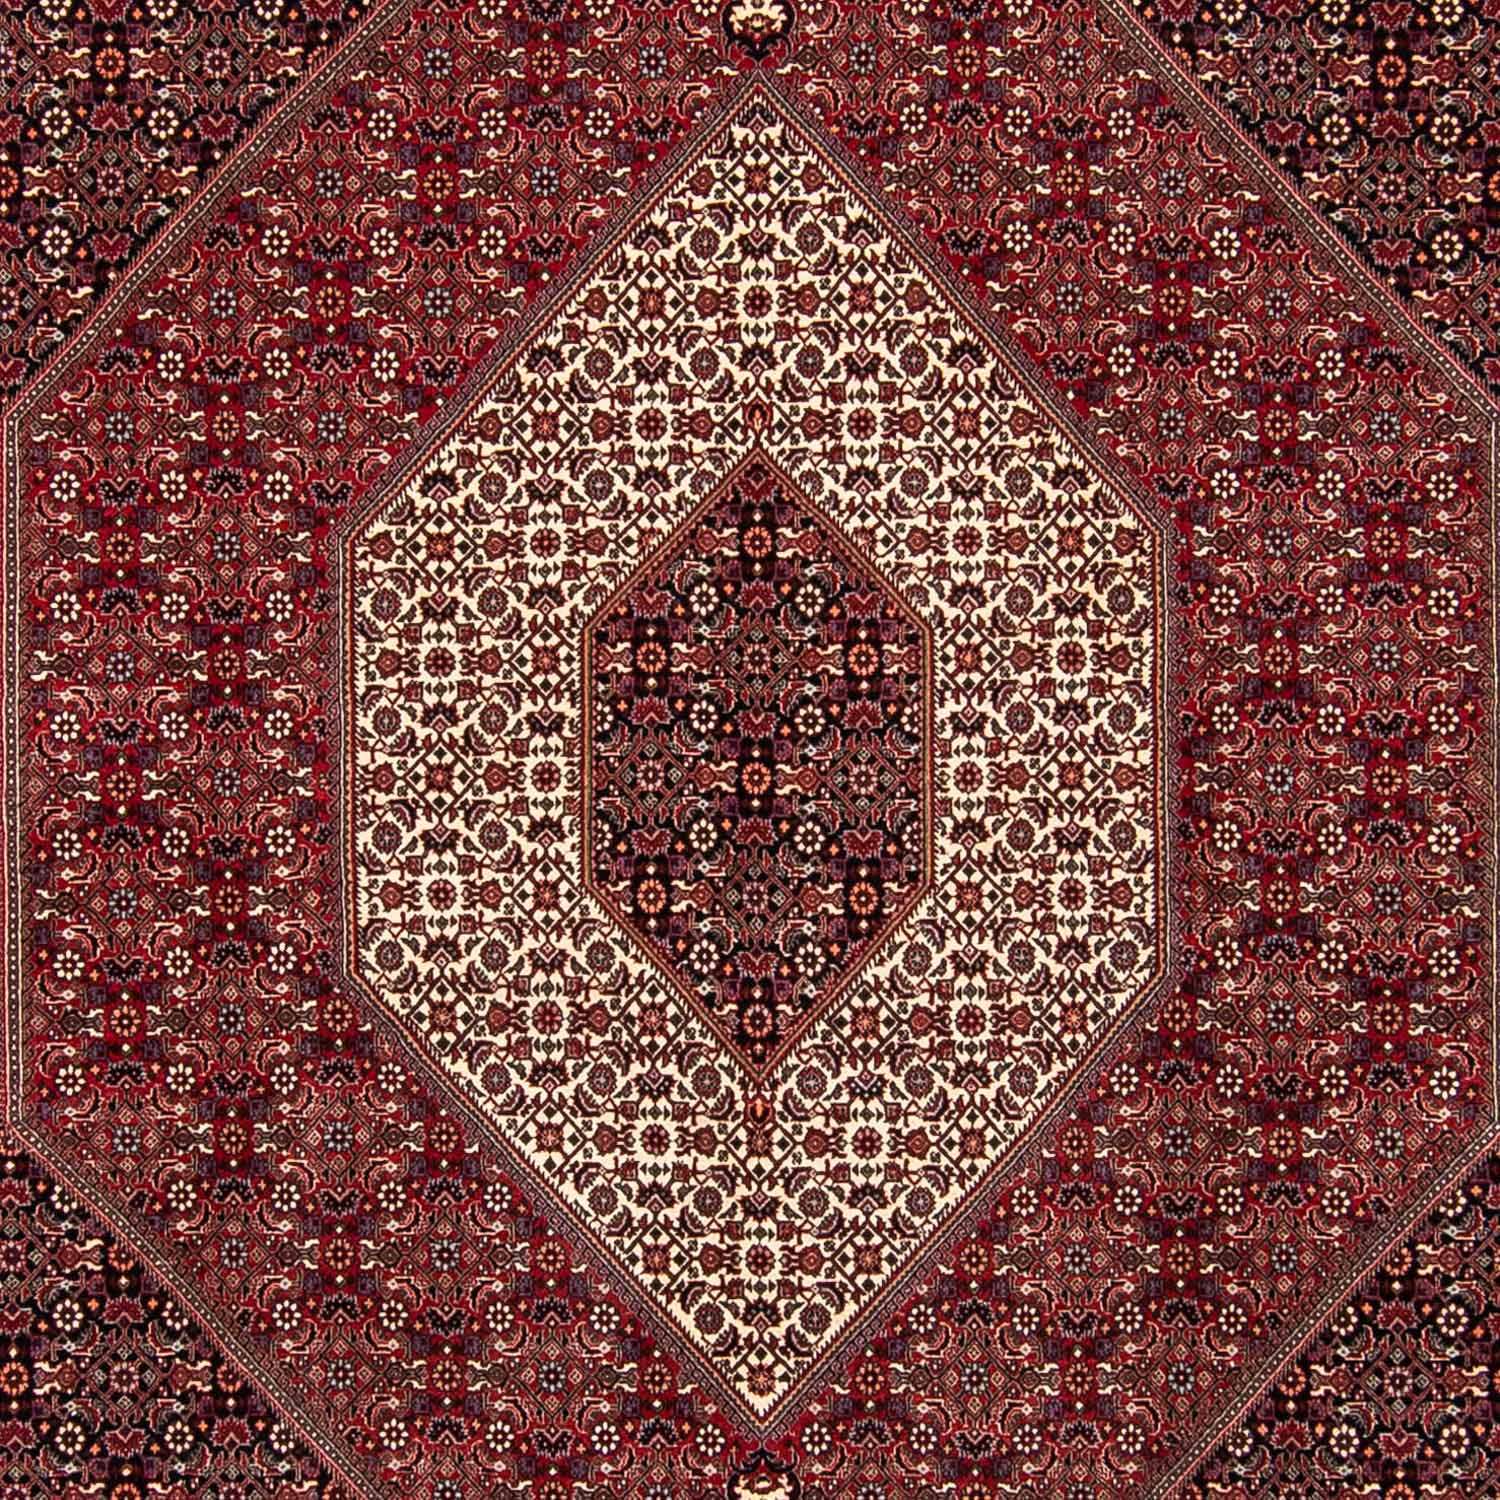 Persisk tæppe - Bijar firkantet  - 250 x 250 cm - mørkerød